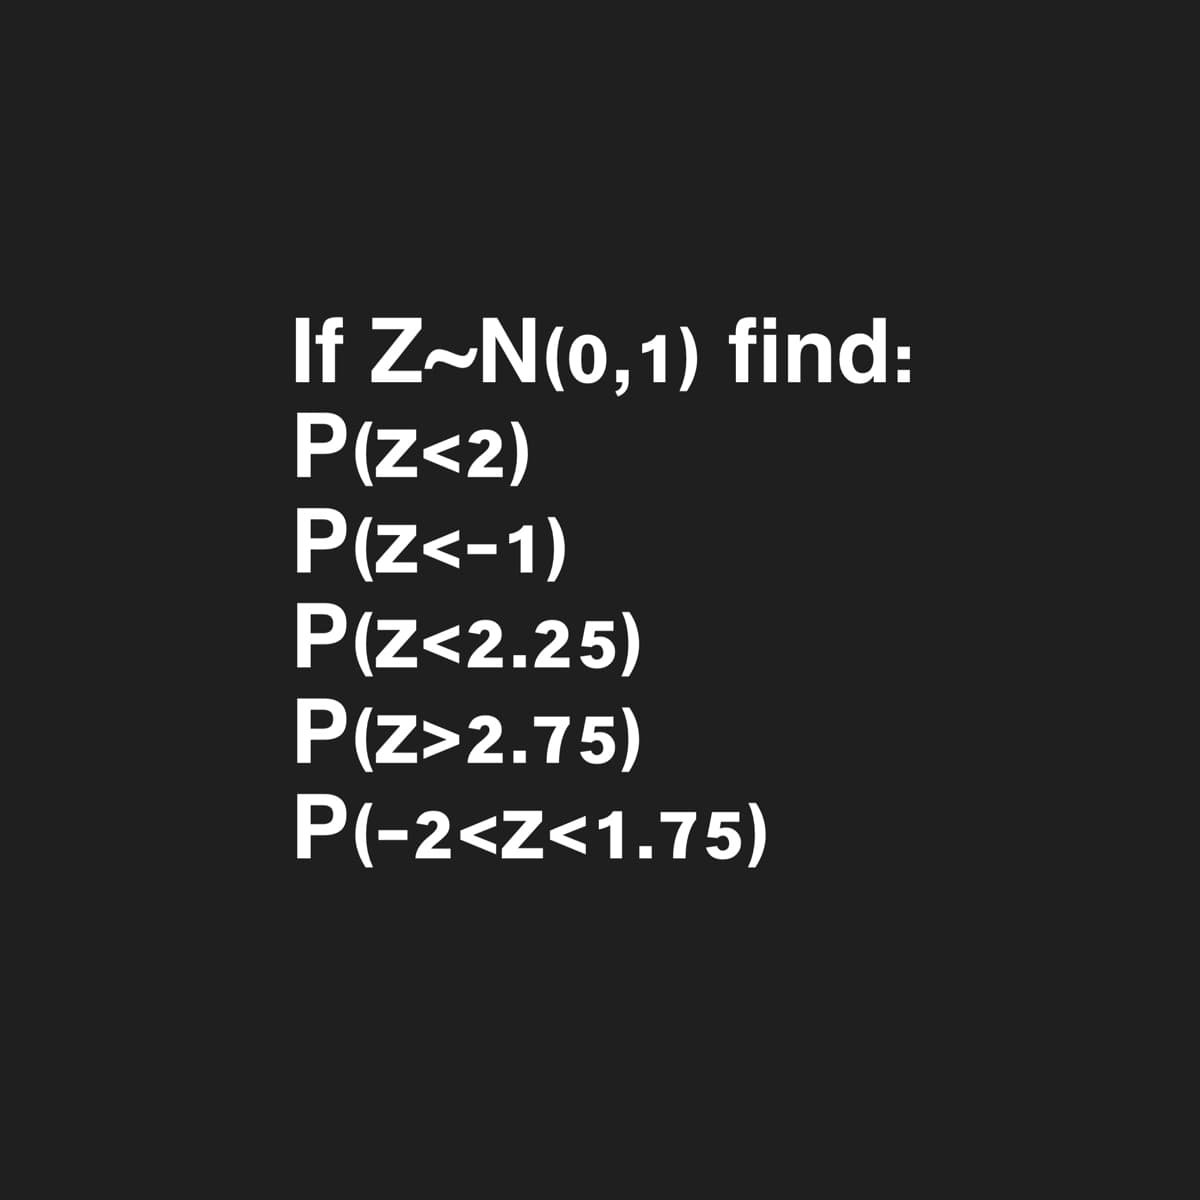 If Z~N(o,1) find:
P(Z<2)
P(z<-1)
P(z<2.25)
P(z>2.75)
P(-2<z<1.75)
